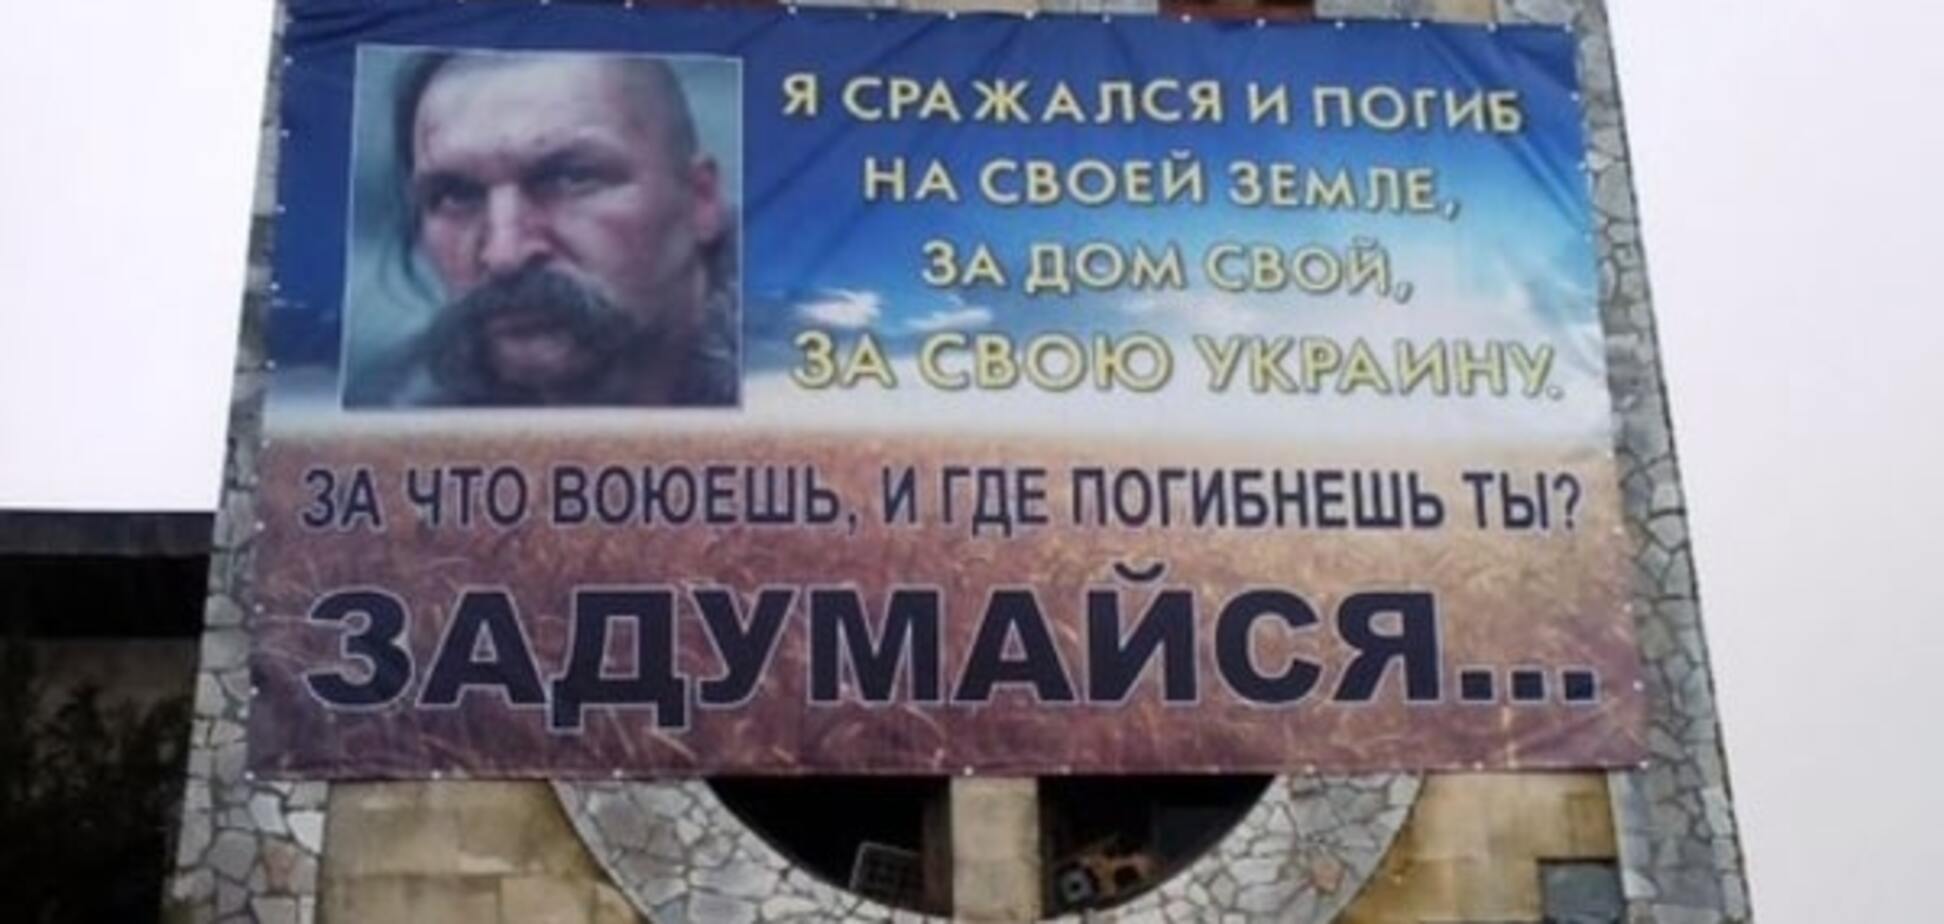 'Ми на своїй землі': українці звернулися до російських військовослужбовців